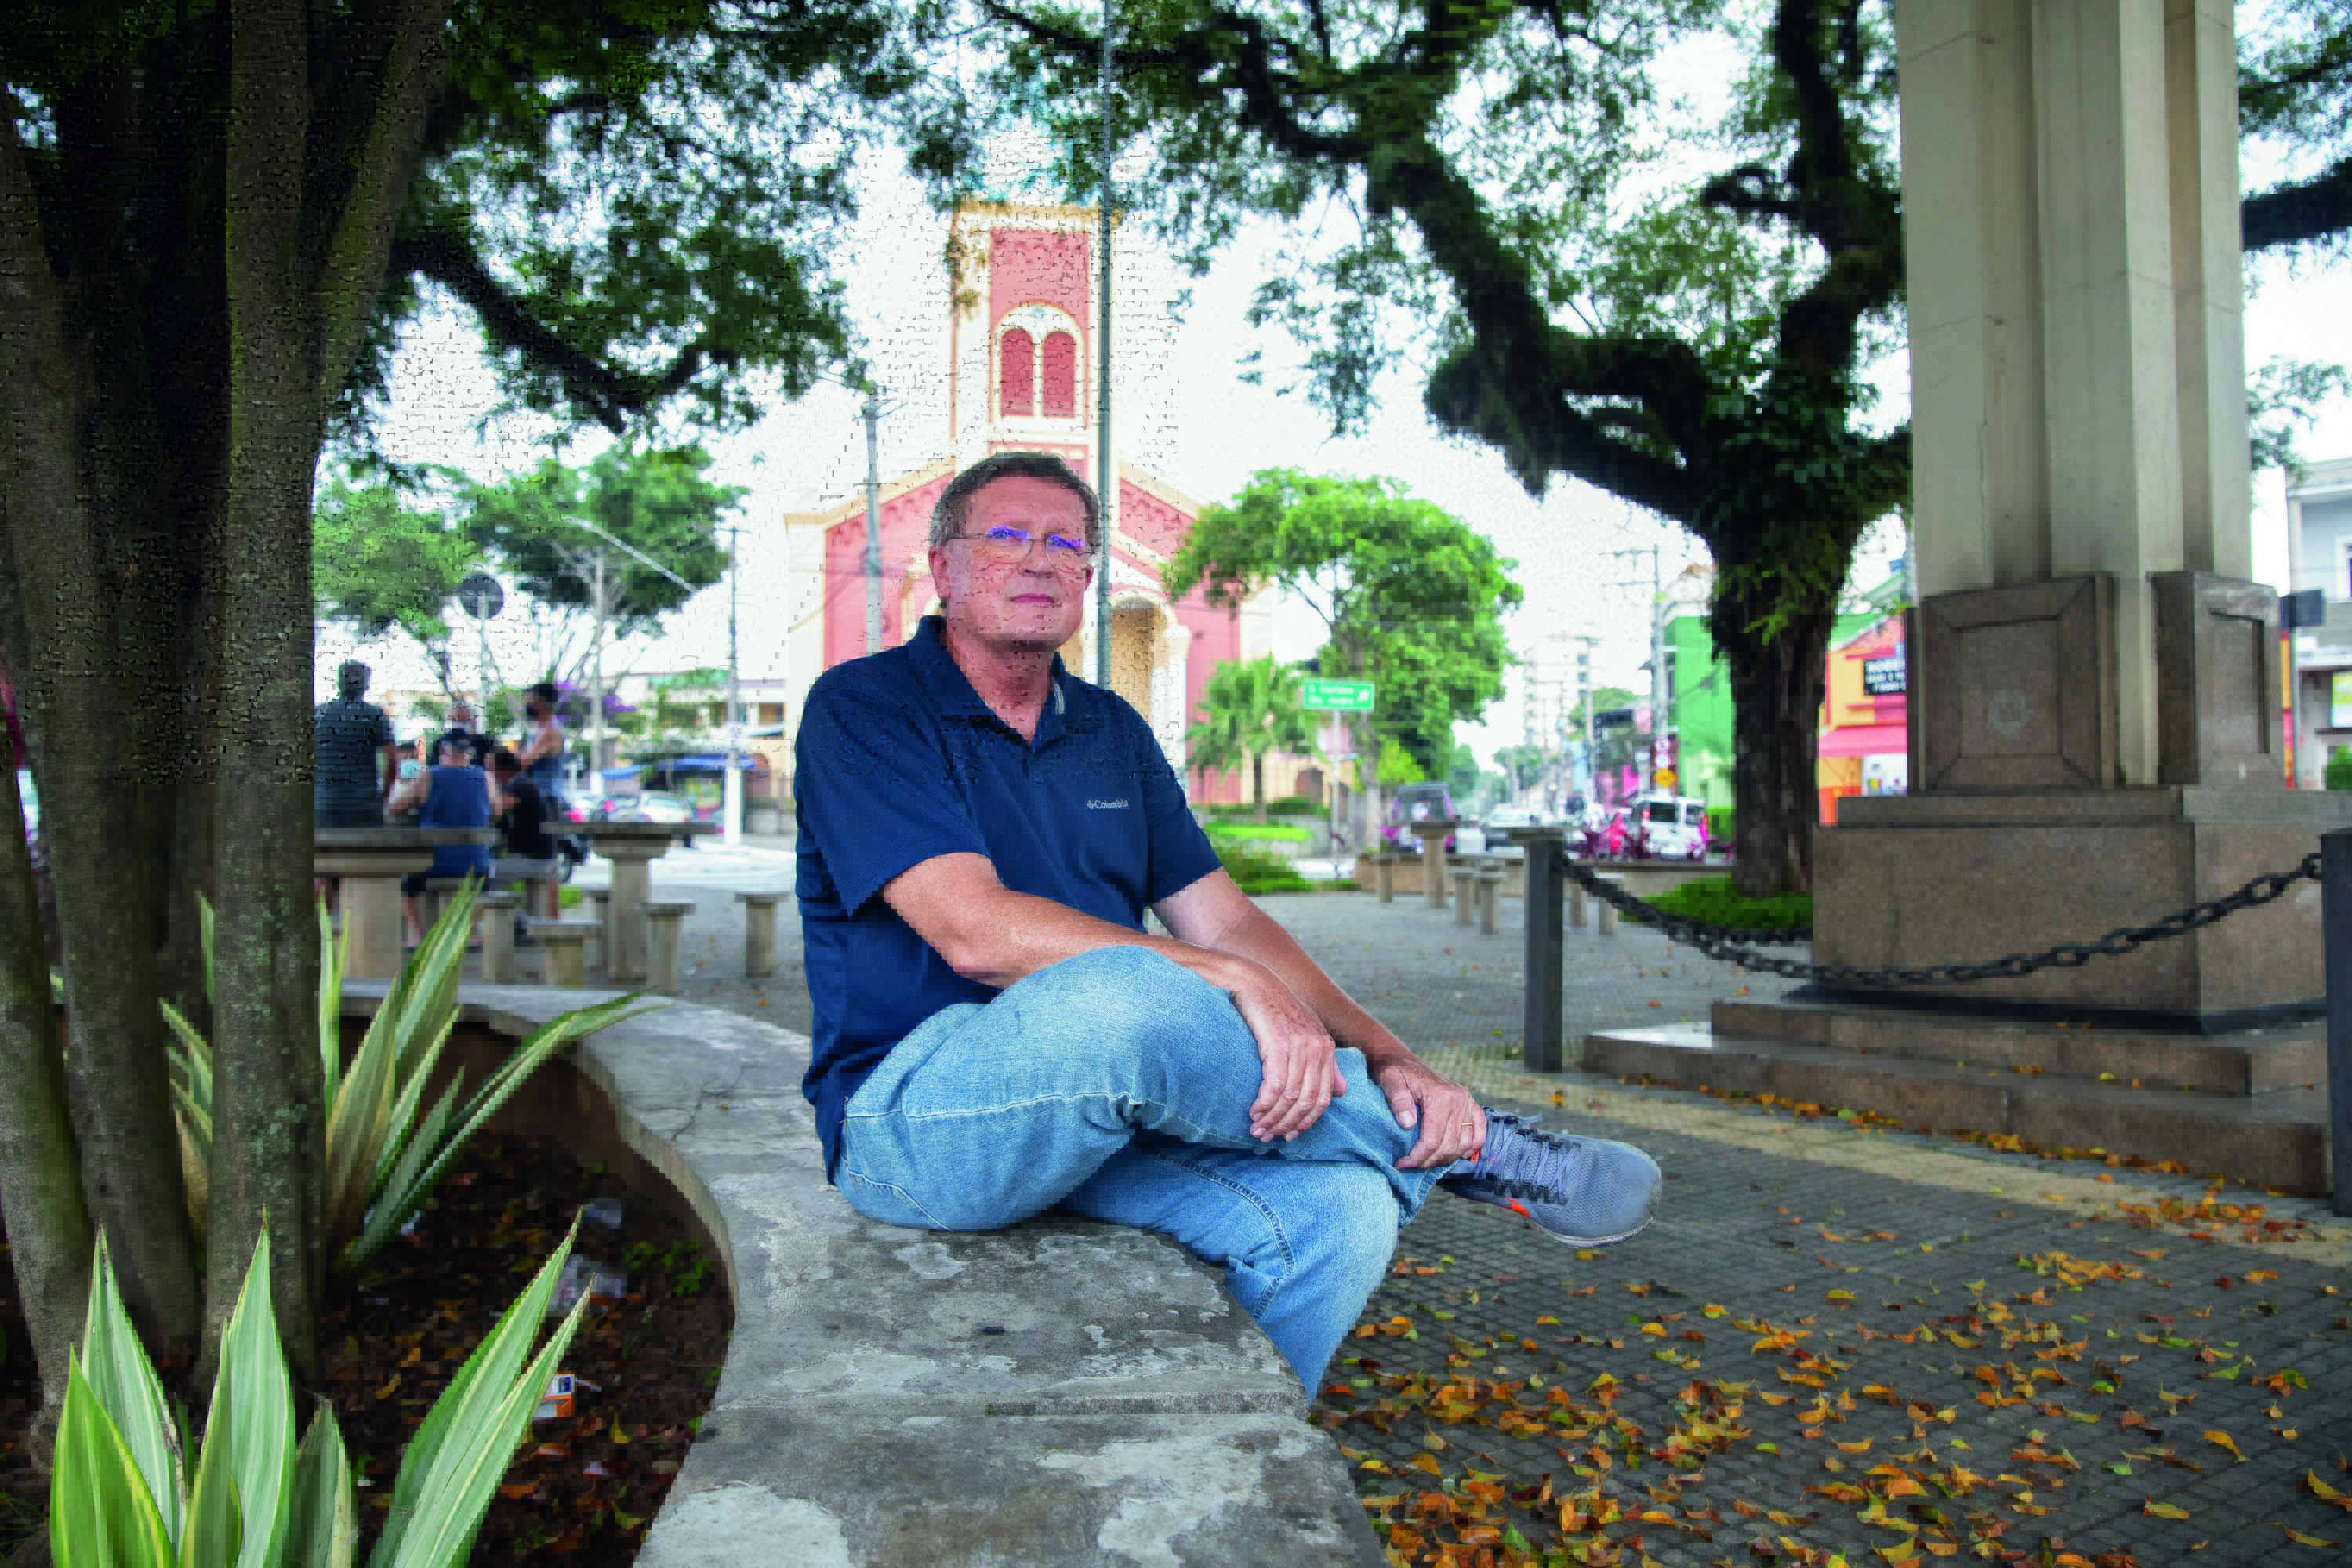 Imagem mostra homem de calça jeans e camisa polo azul marinho sentado em praça. Ao fundo, a fachada de uma igreja.